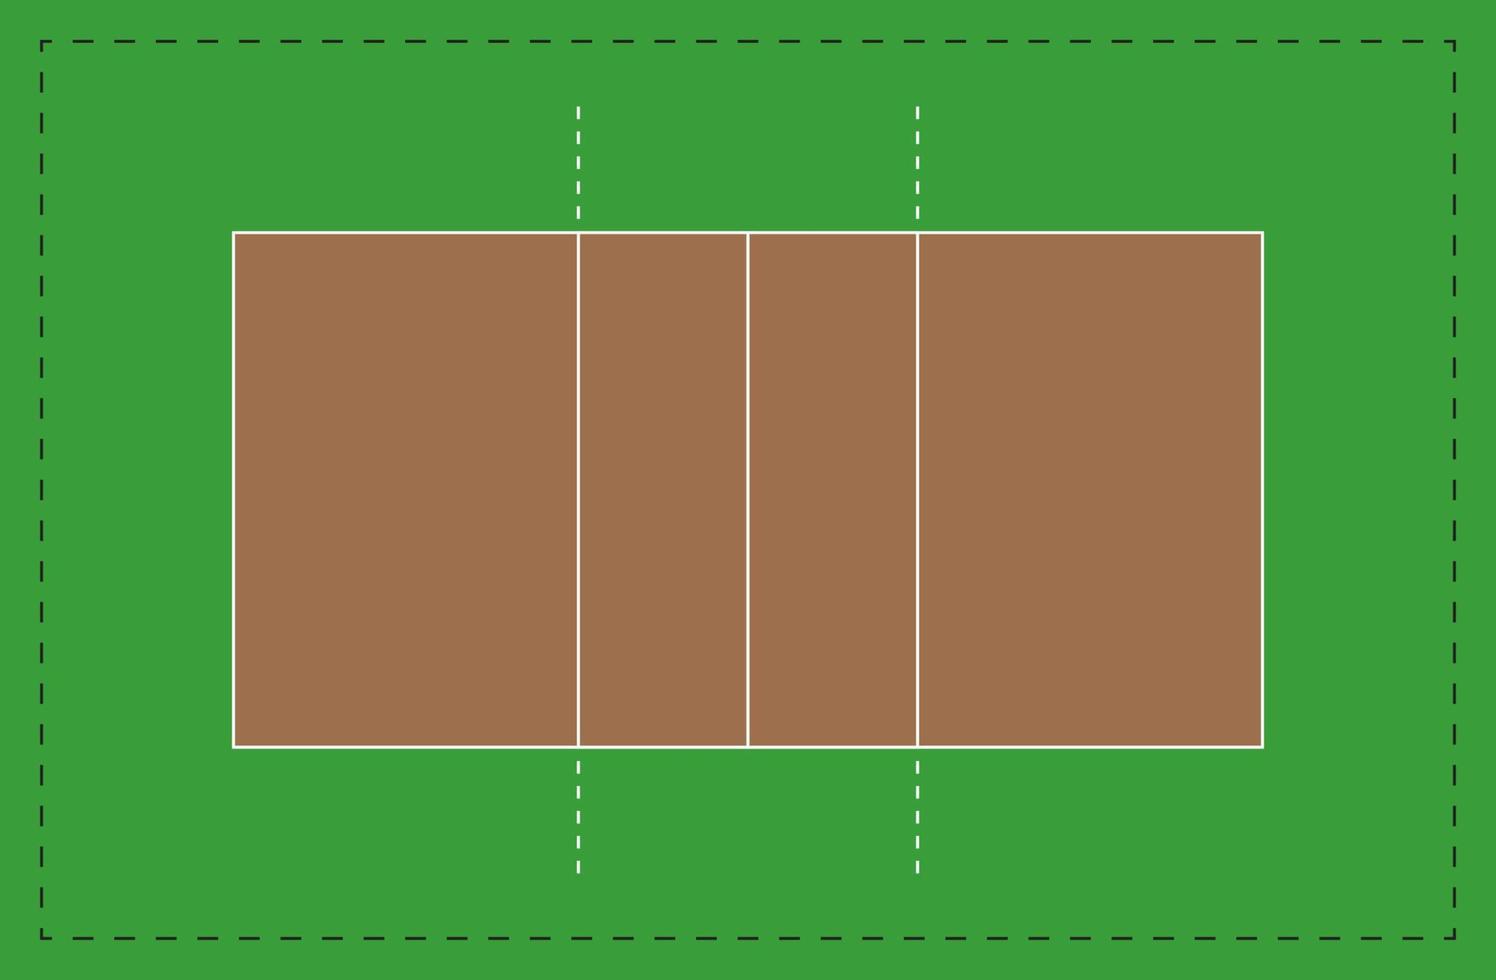 leeres schema des volleyballplatzes unter einhaltung der standardproportionen, mit markierungen, vektor isoliert.